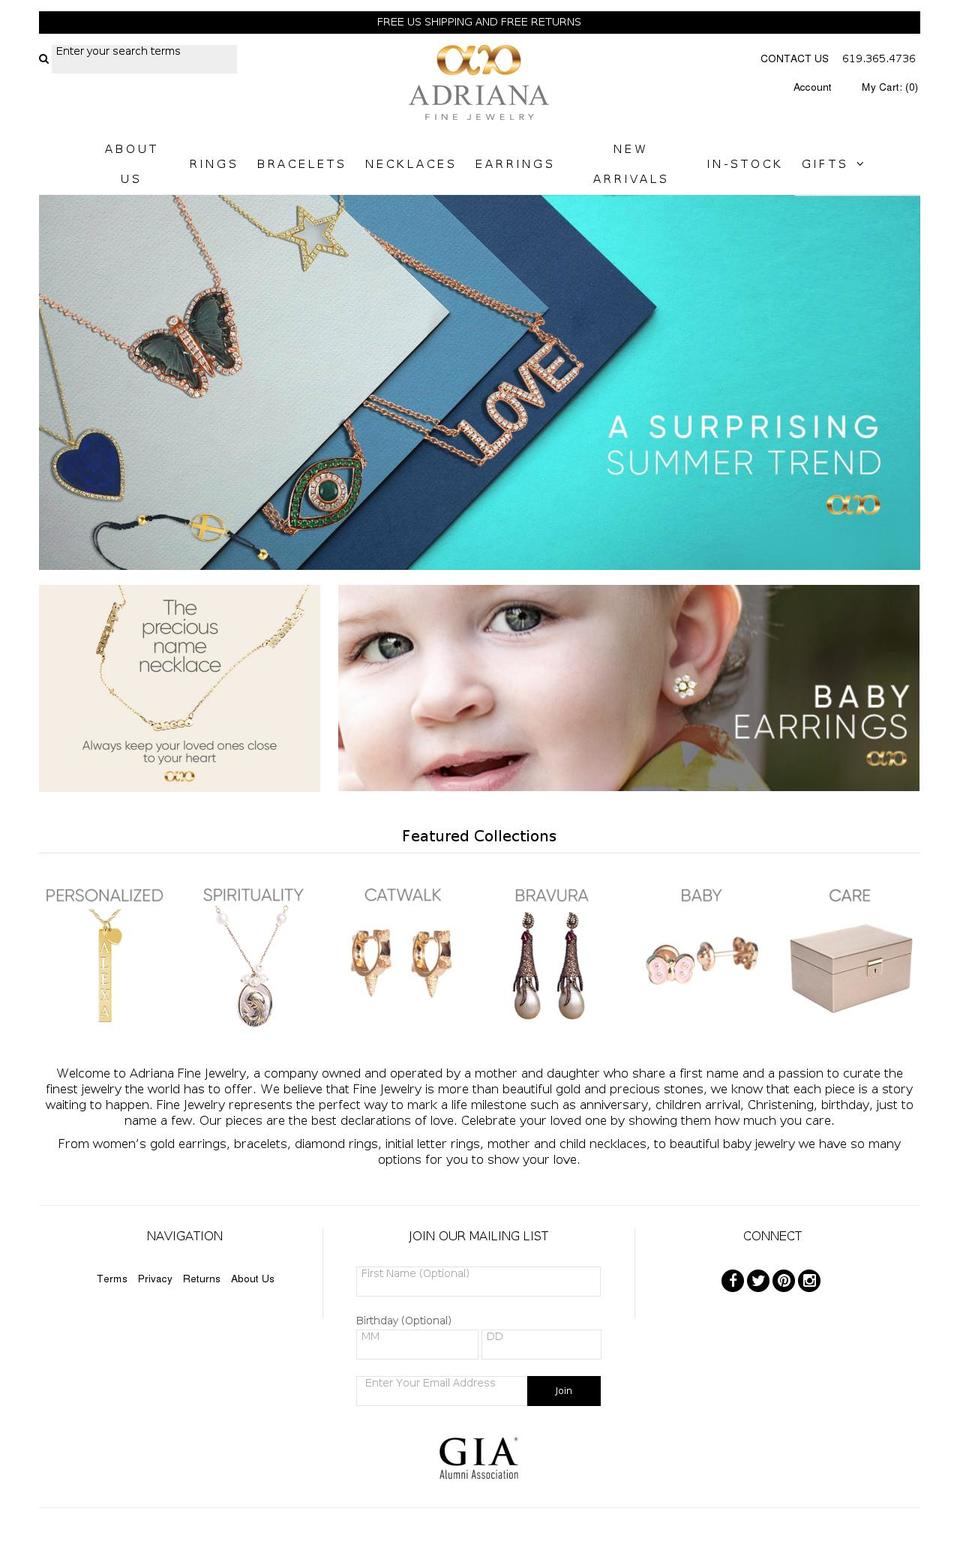 adriana.jewelry shopify website screenshot